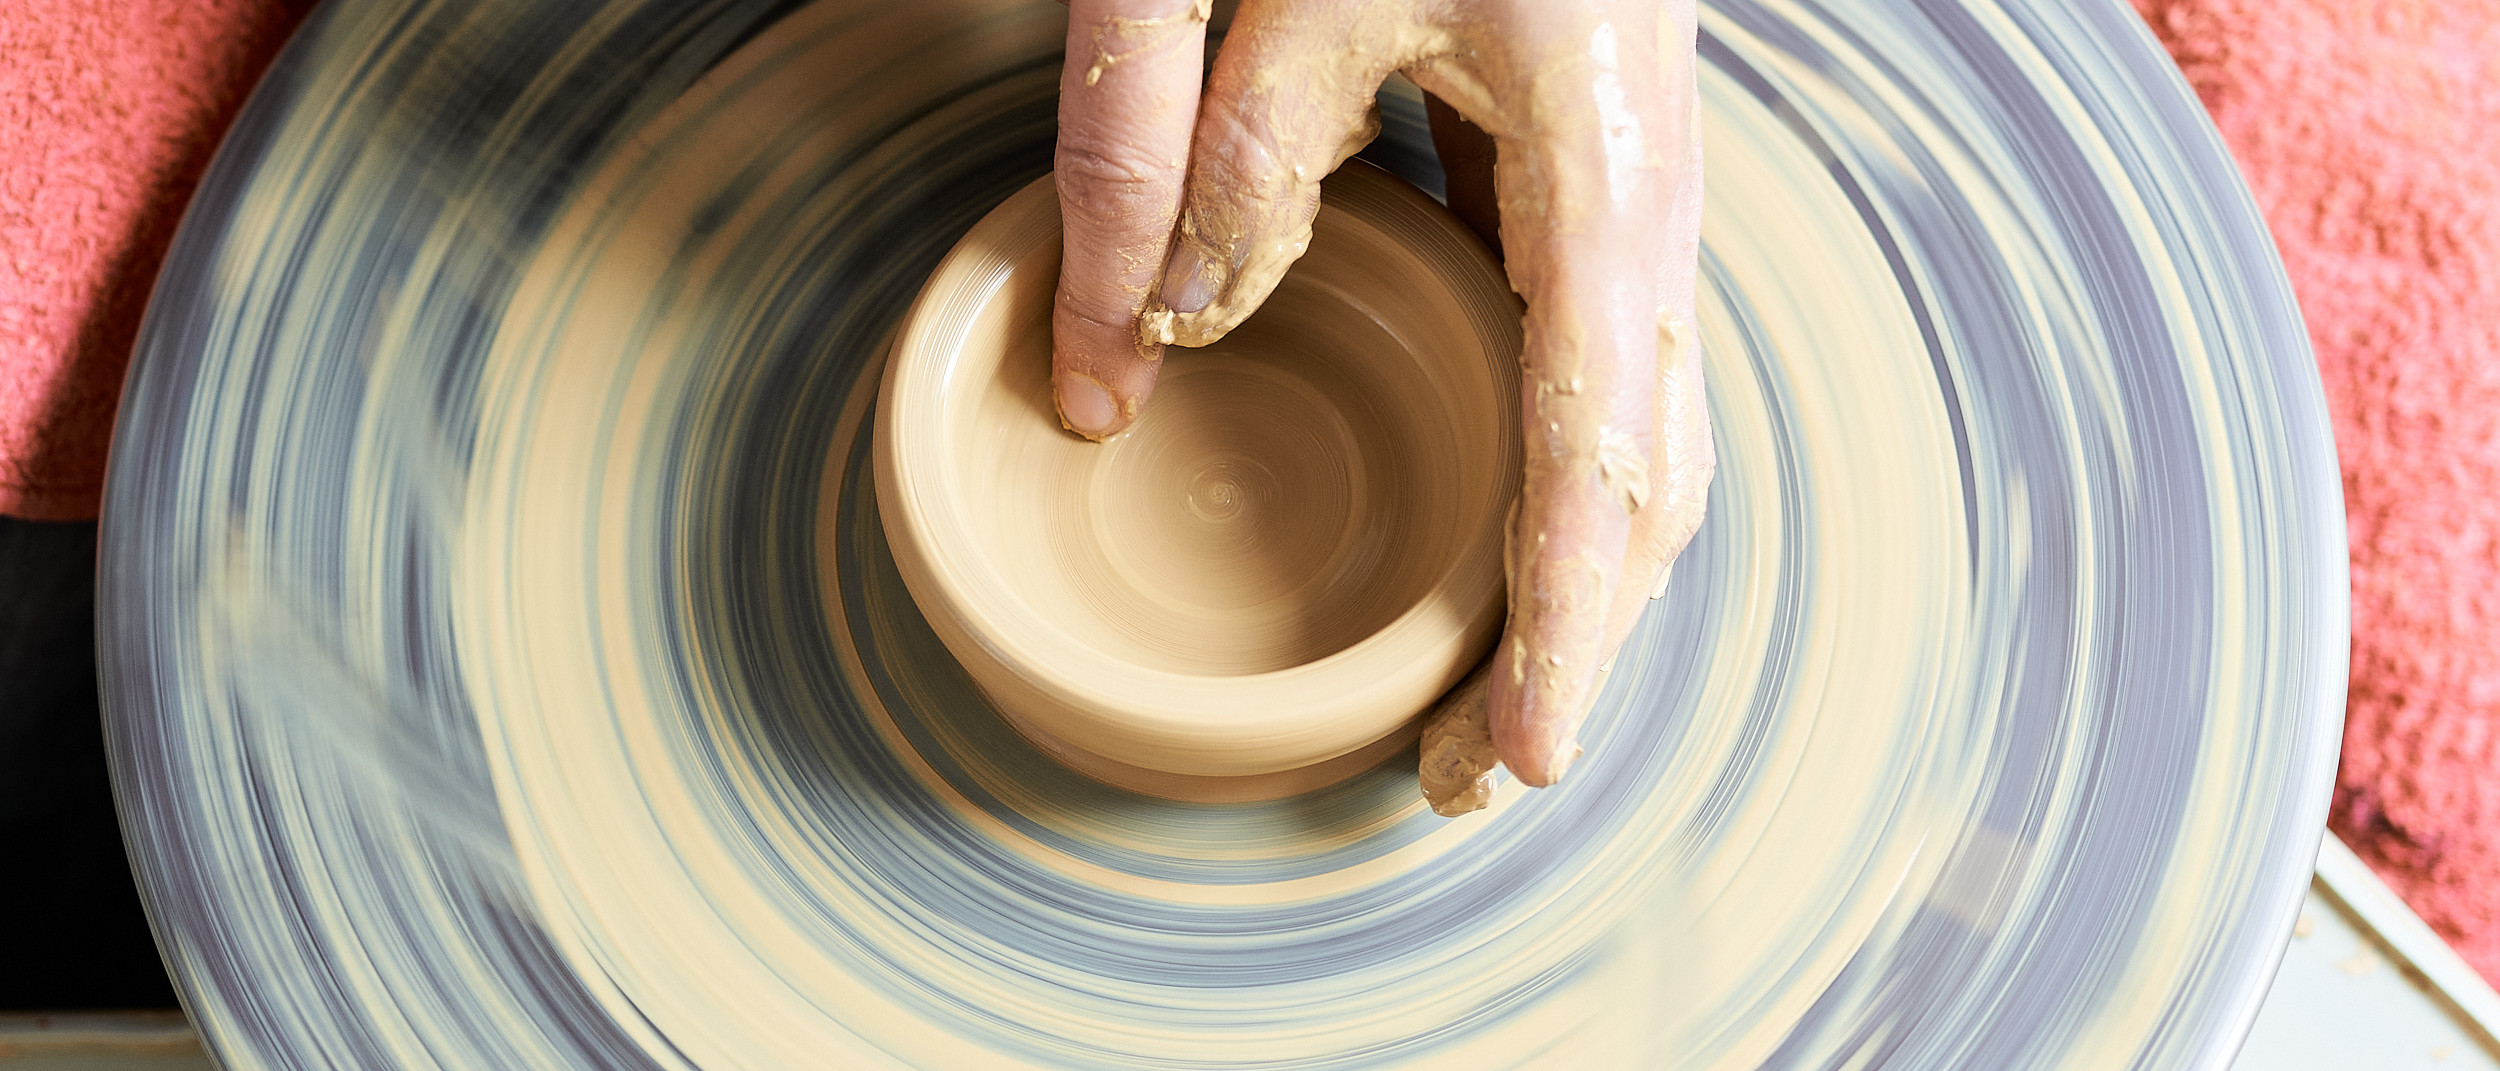 Dörthe Ries beim Drehen © Natur Kultur Keramik